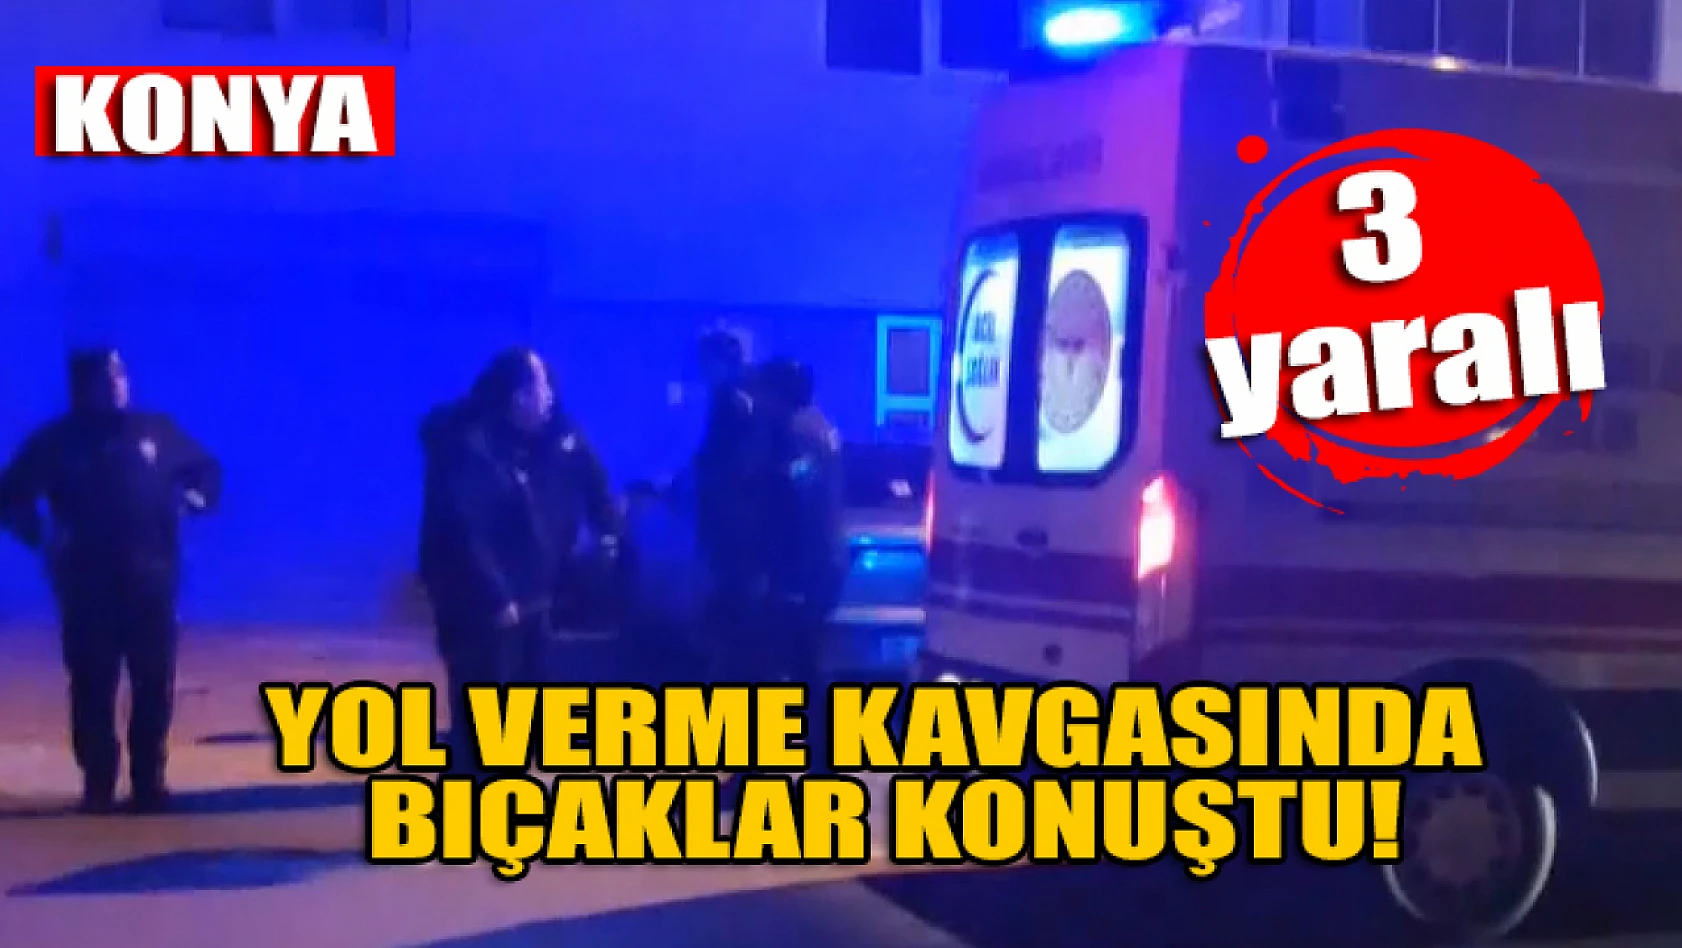 Konya'da yol verme kavgasında bıçaklar konuştu: 3 yaralı